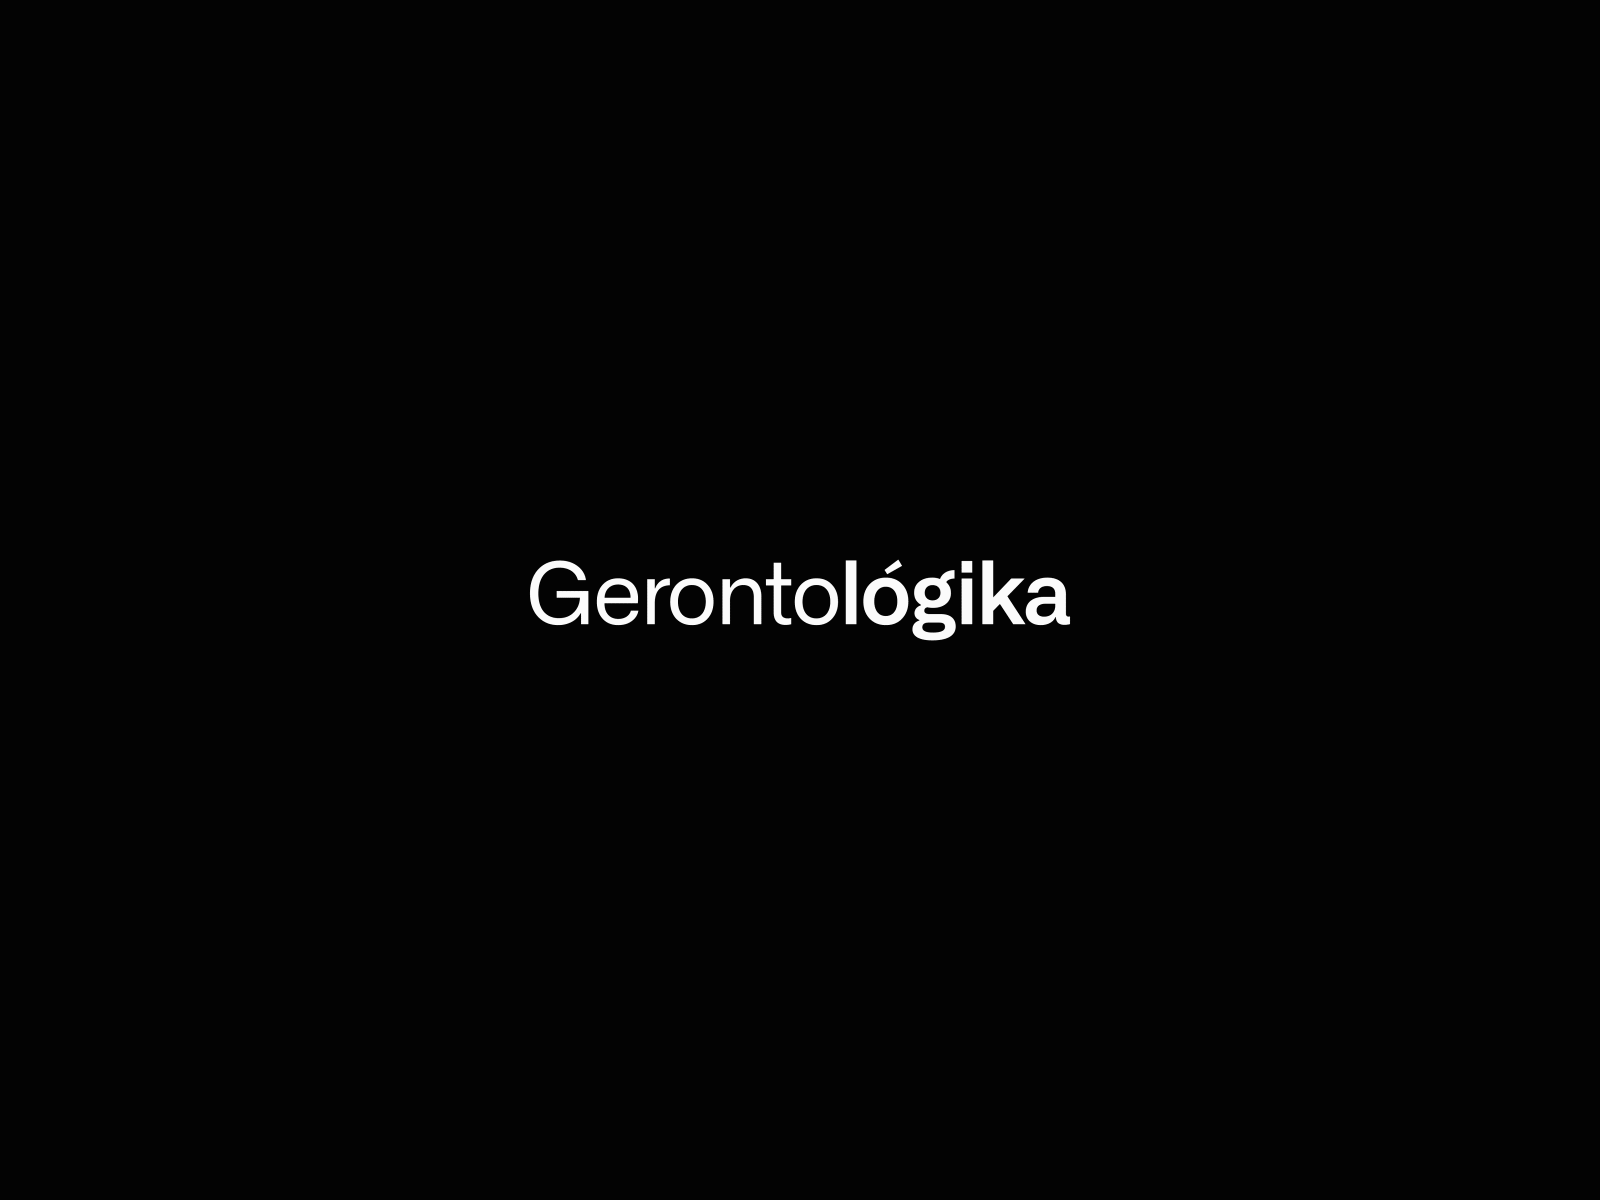 Gerontologika Logotype blackandwhite branding branding design design geriatric gerontology logo logotype responsive responsive logo